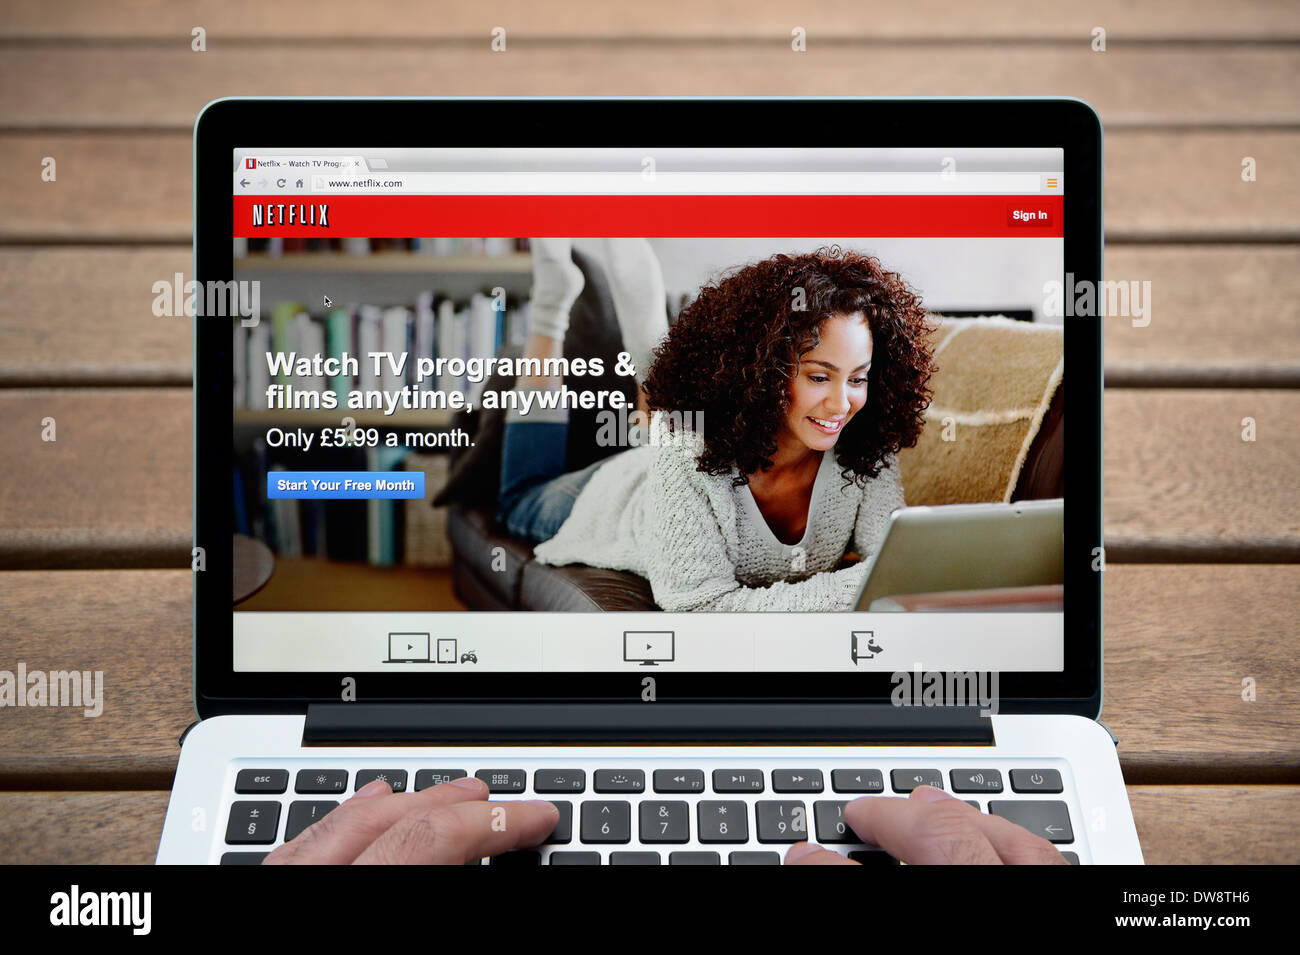 Le site web de Netflix sur un MacBook contre un banc en bois fond de plein air y compris les doigts d'un homme (usage éditorial uniquement). Banque D'Images